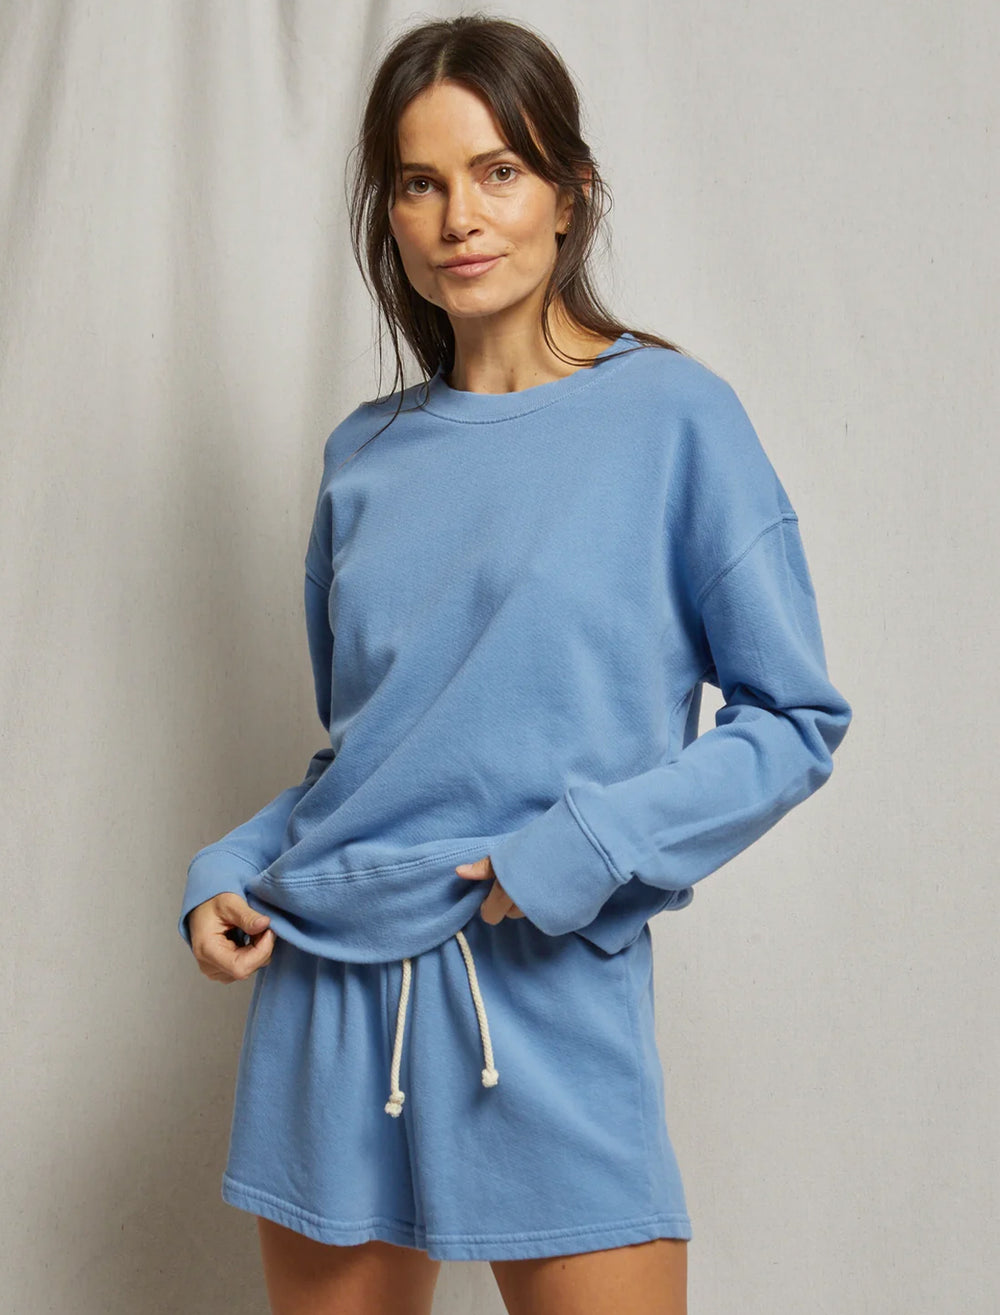 Model wearing Perfectwhitetee's tyler sweatshirt in caroline blue.